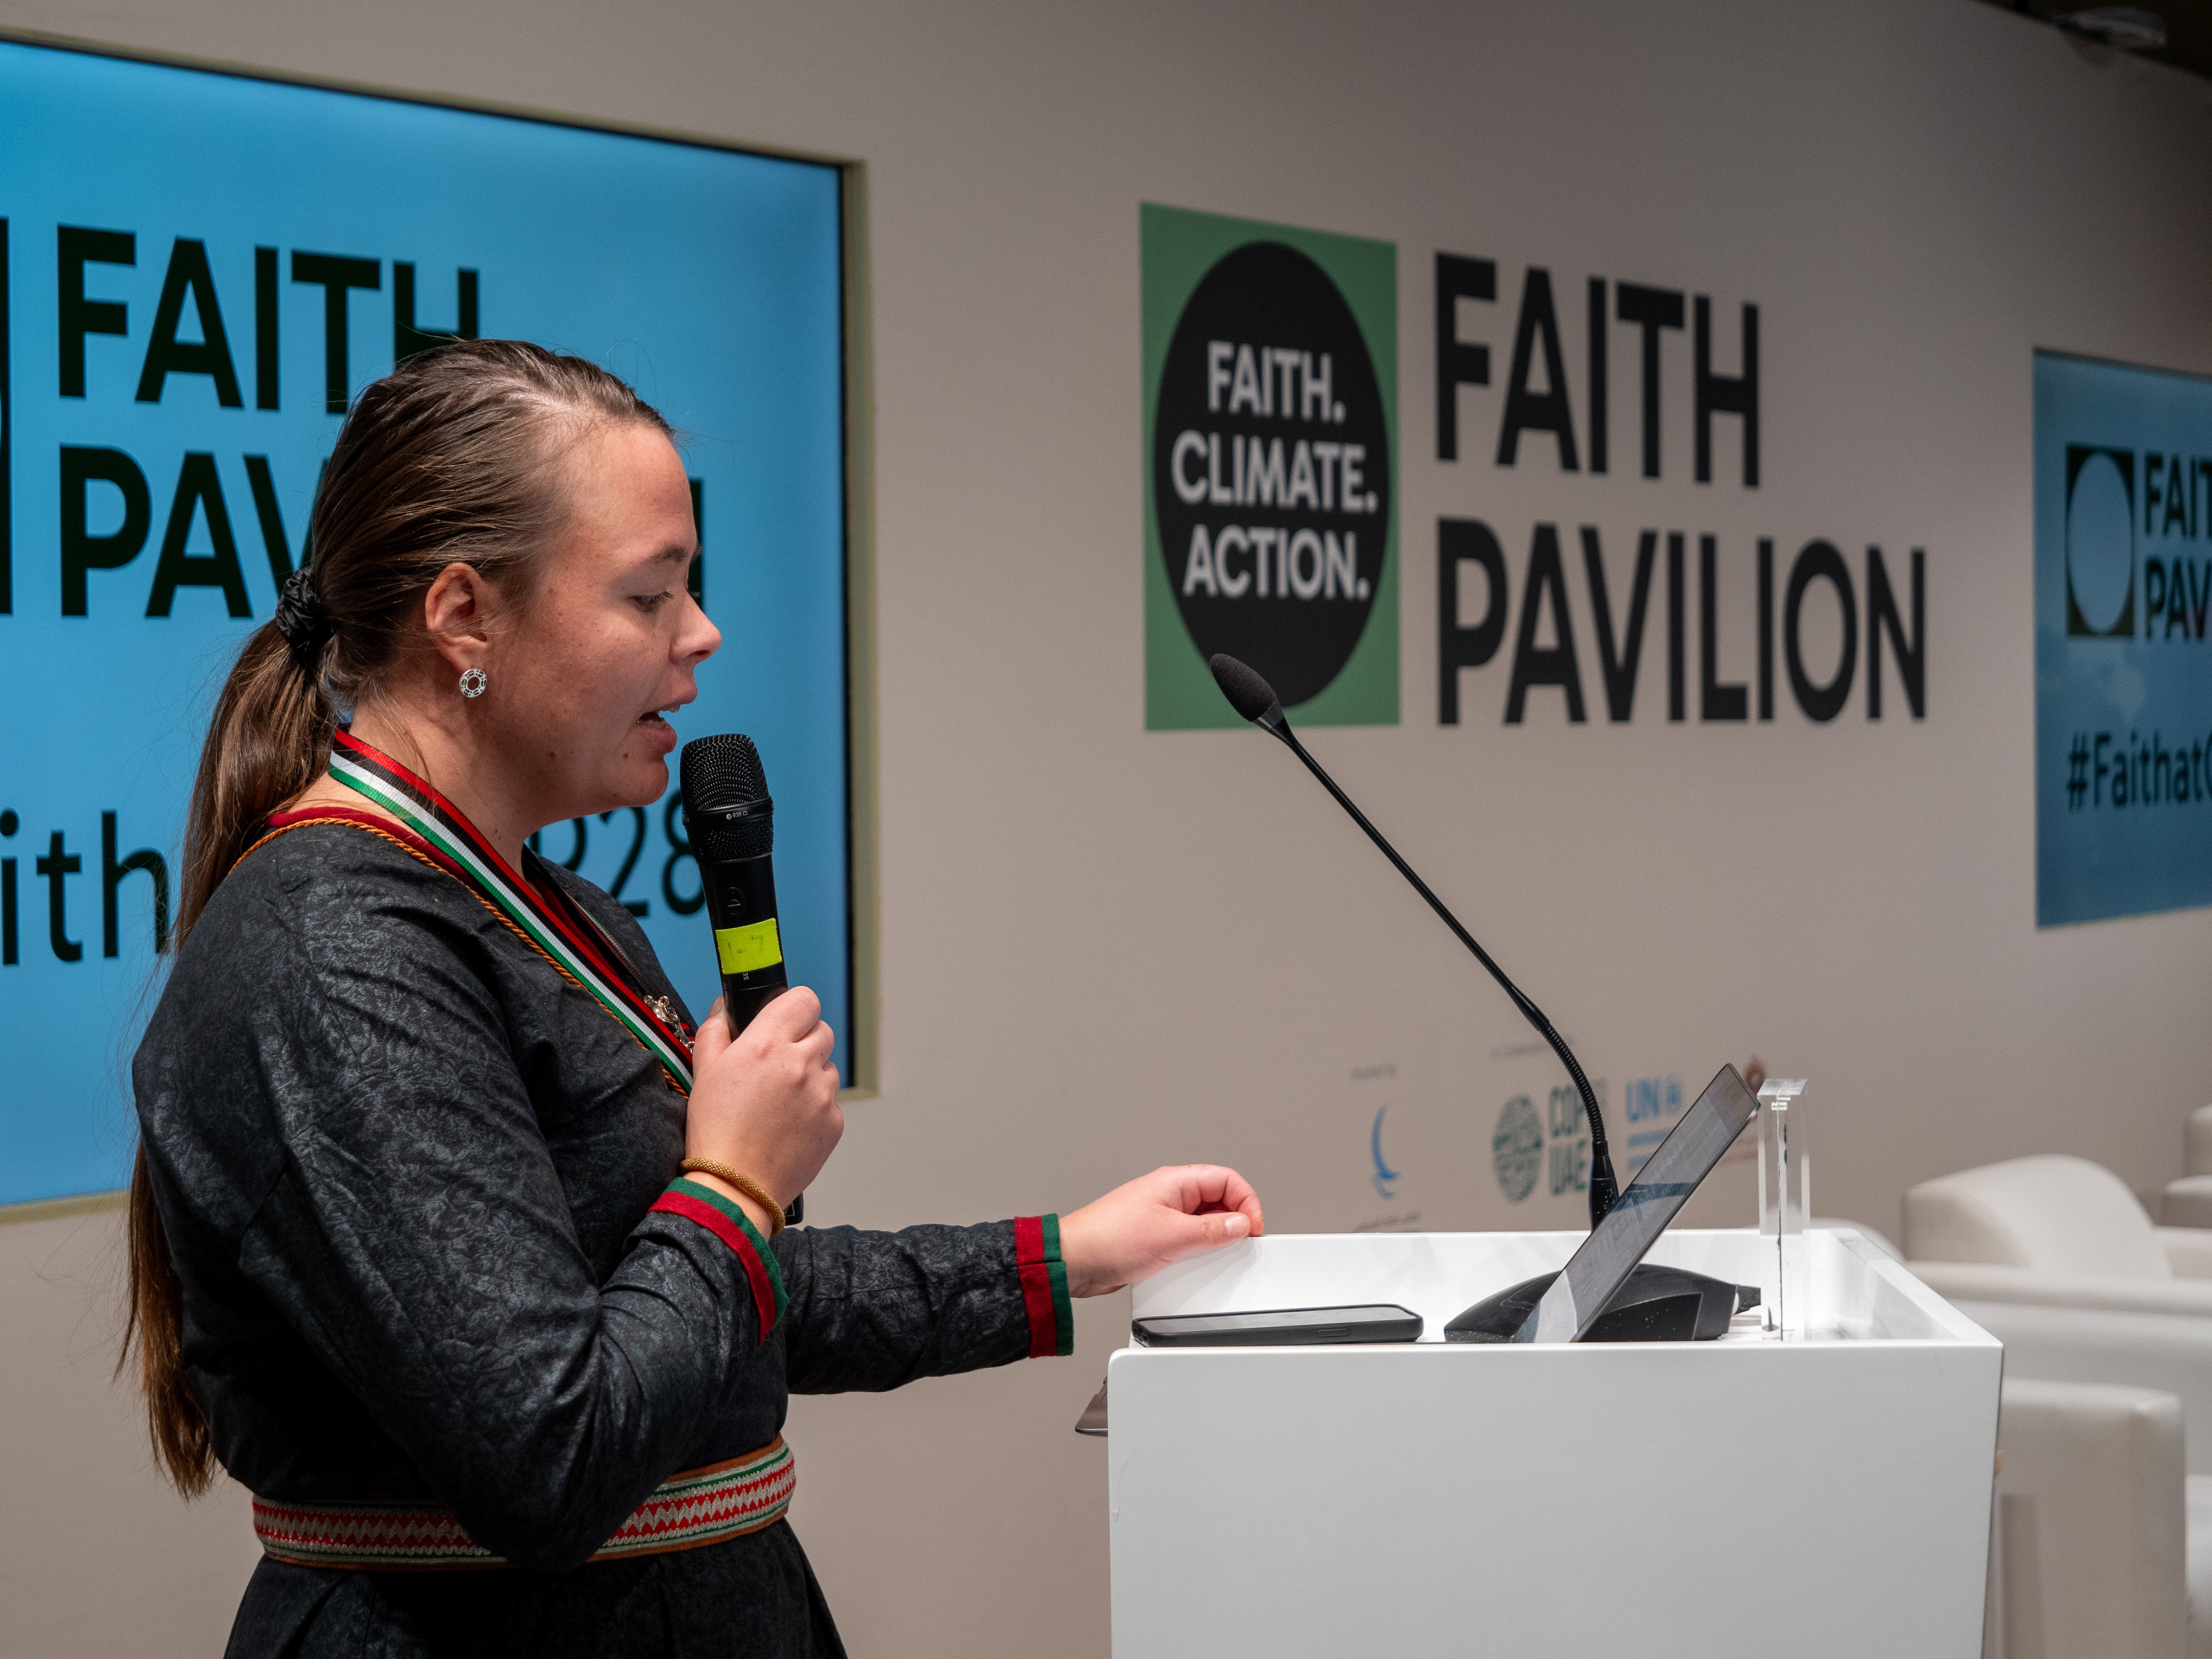 Kvinna i samedräkt framför skylt med texten Faith Pavilion